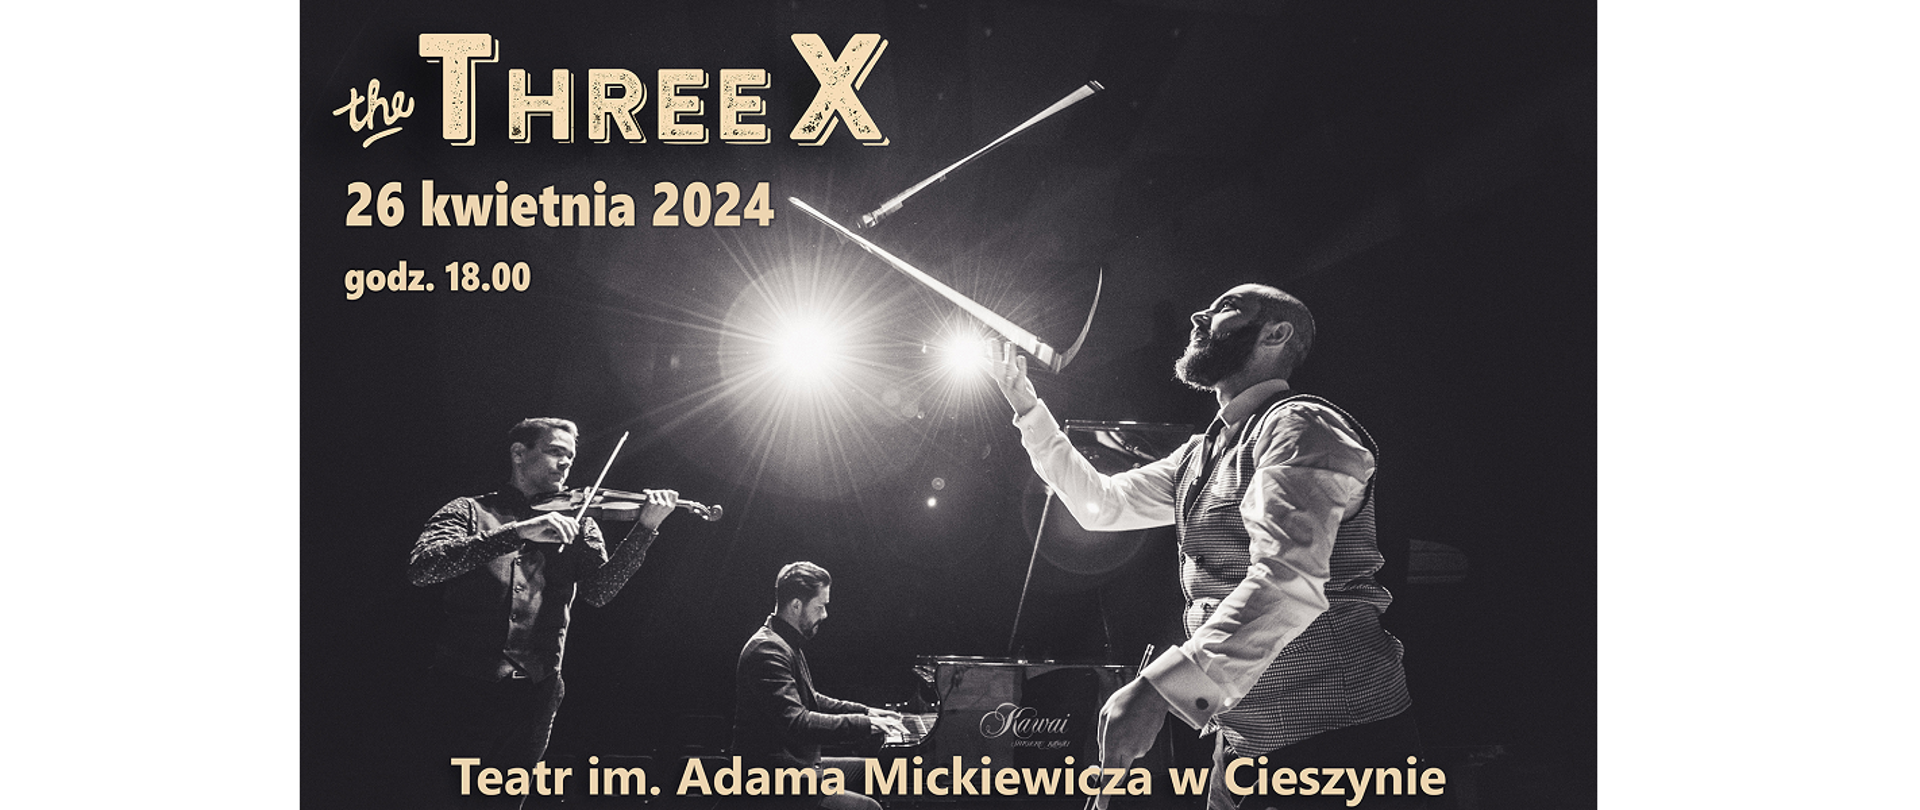 The Three X. 26 kwietnia 2024 godz. 18.00. Teatr im. Adama Mickiewicza w Cieszynie